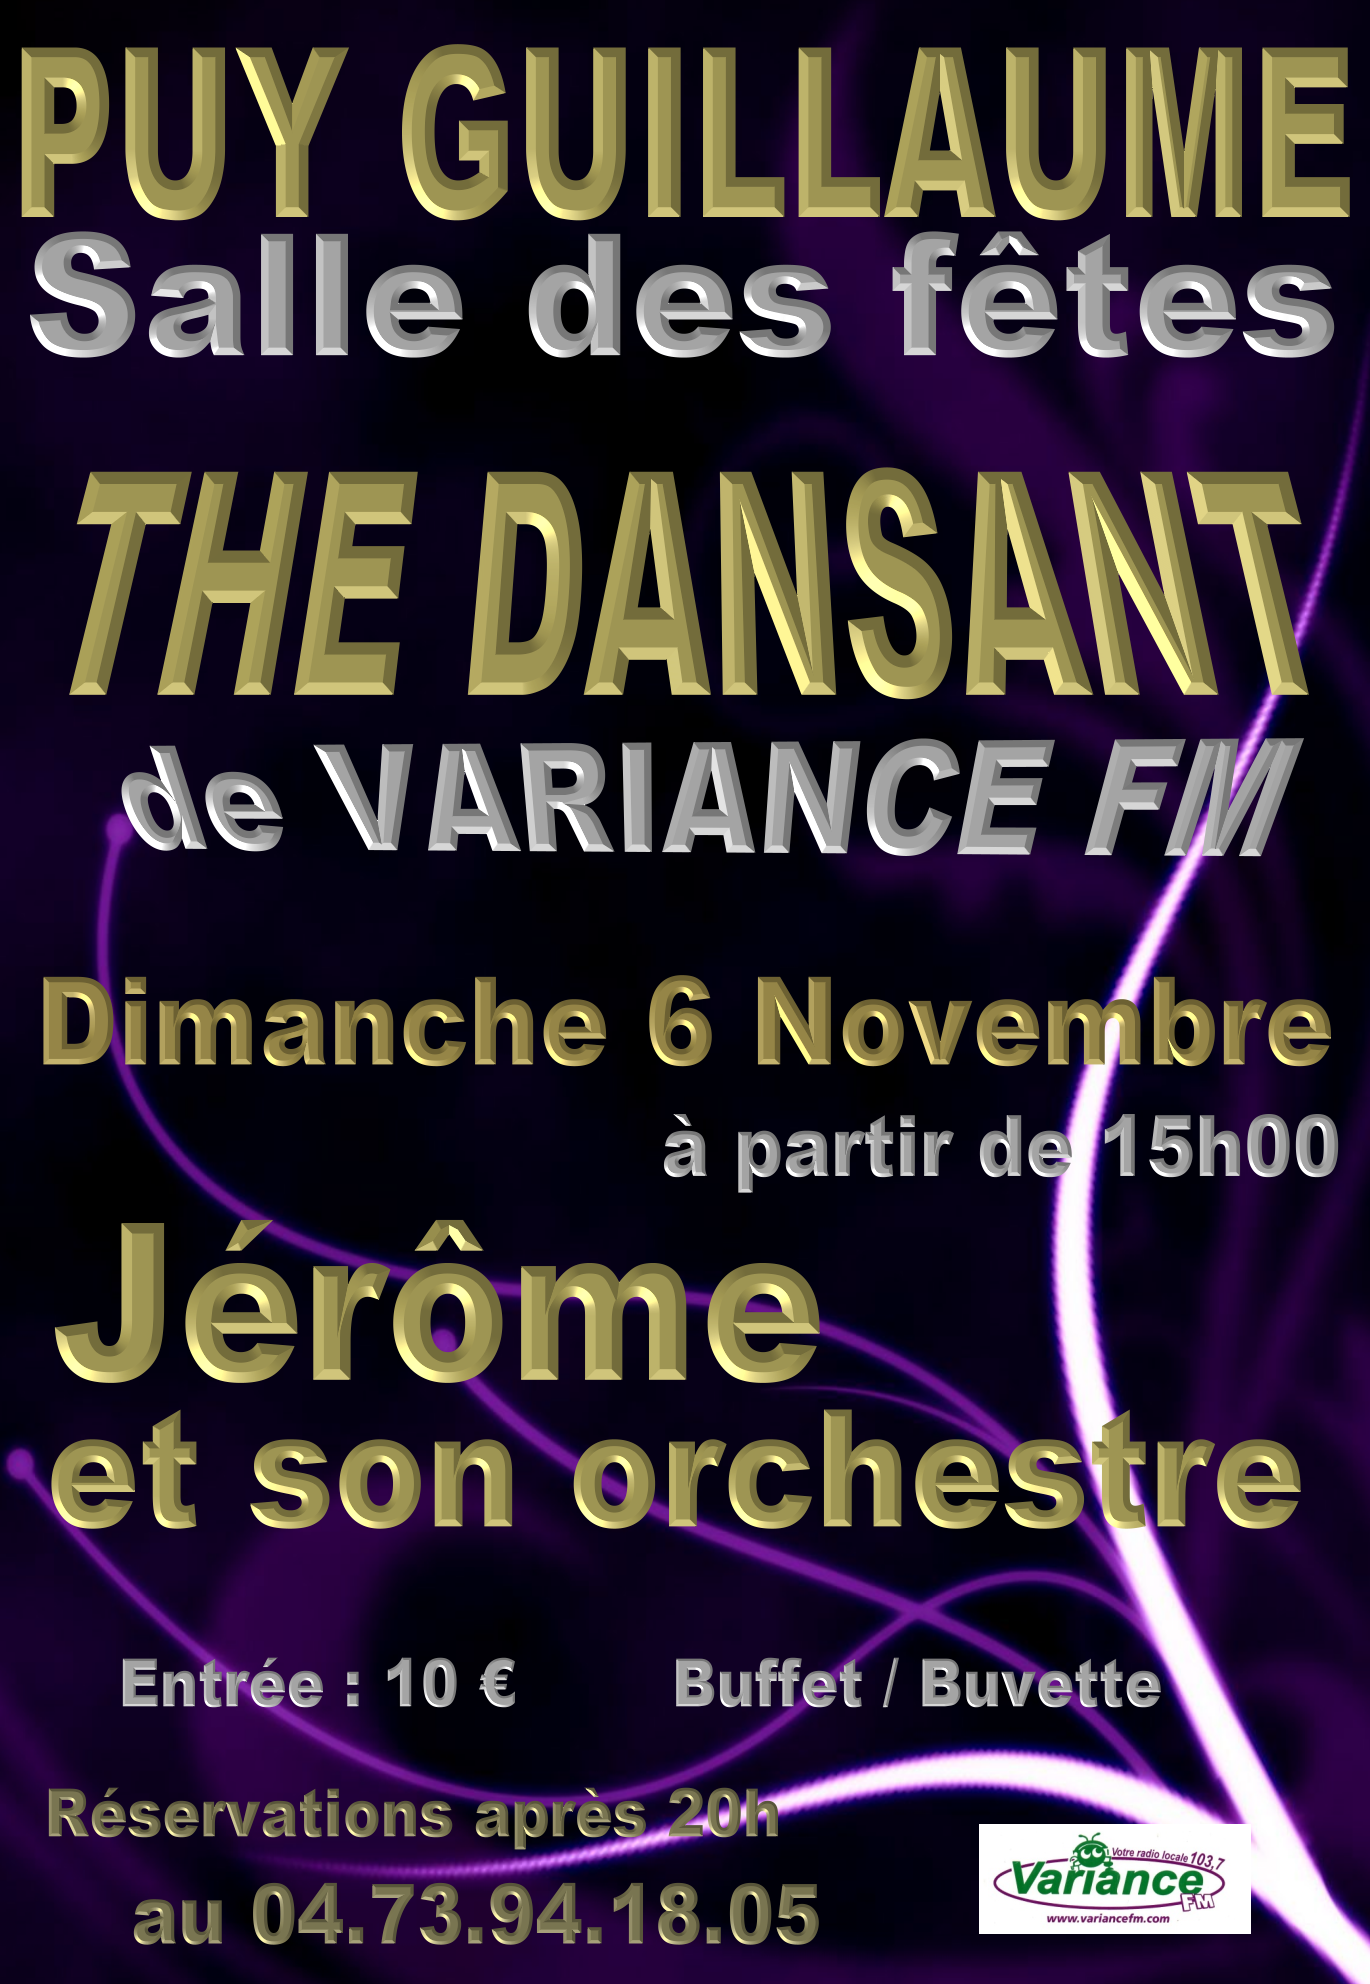 Thé Dansant de Variance FM